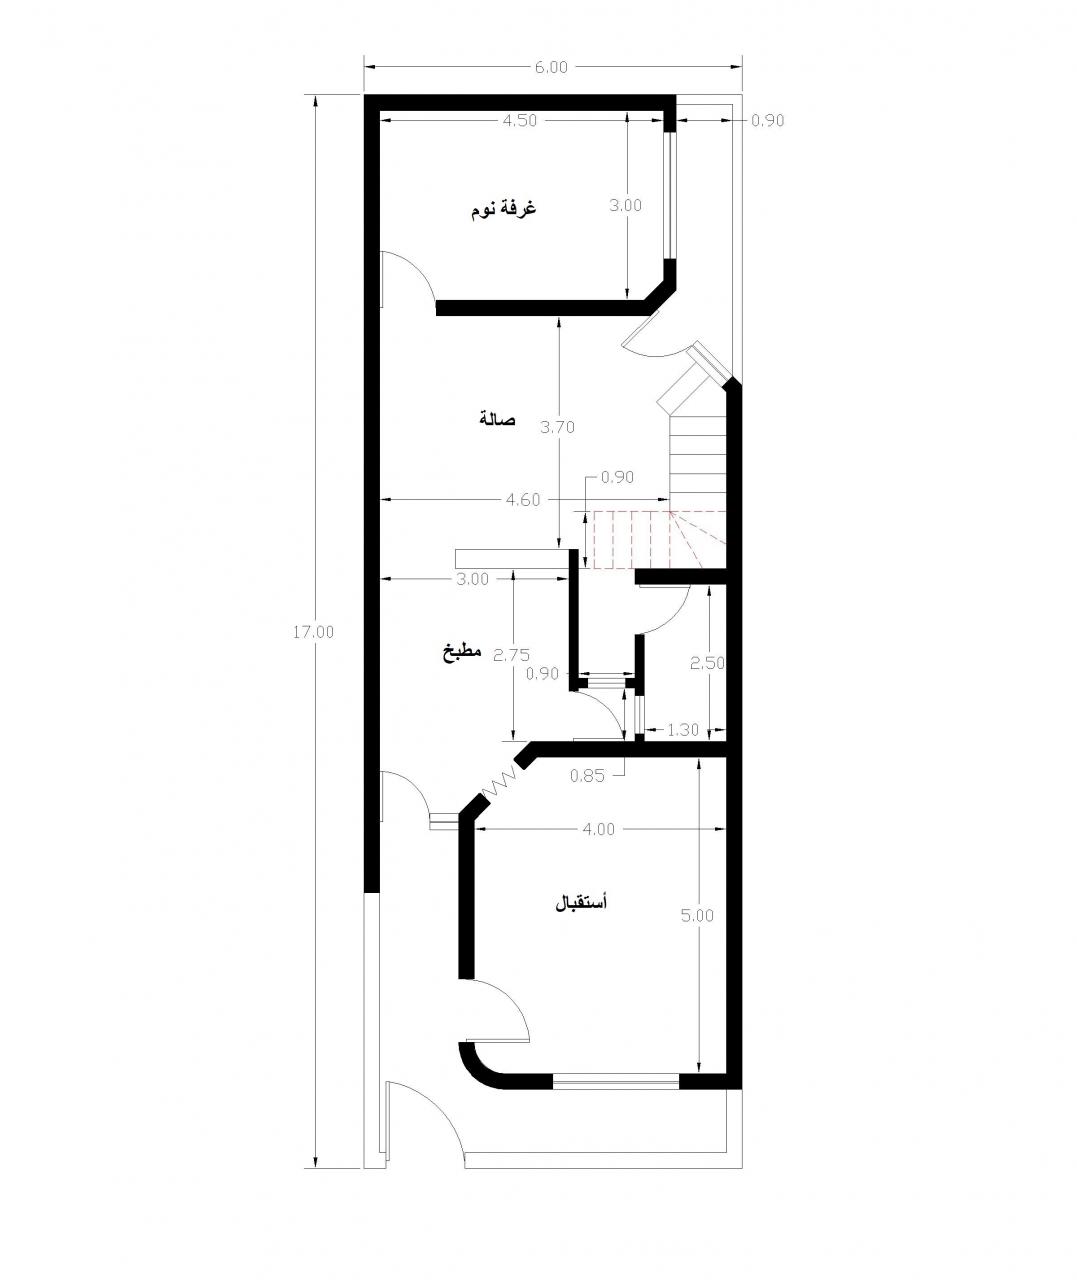 خريطة بناء منزل 60 متر اجمل تصميمات للشقق دموع جذابة